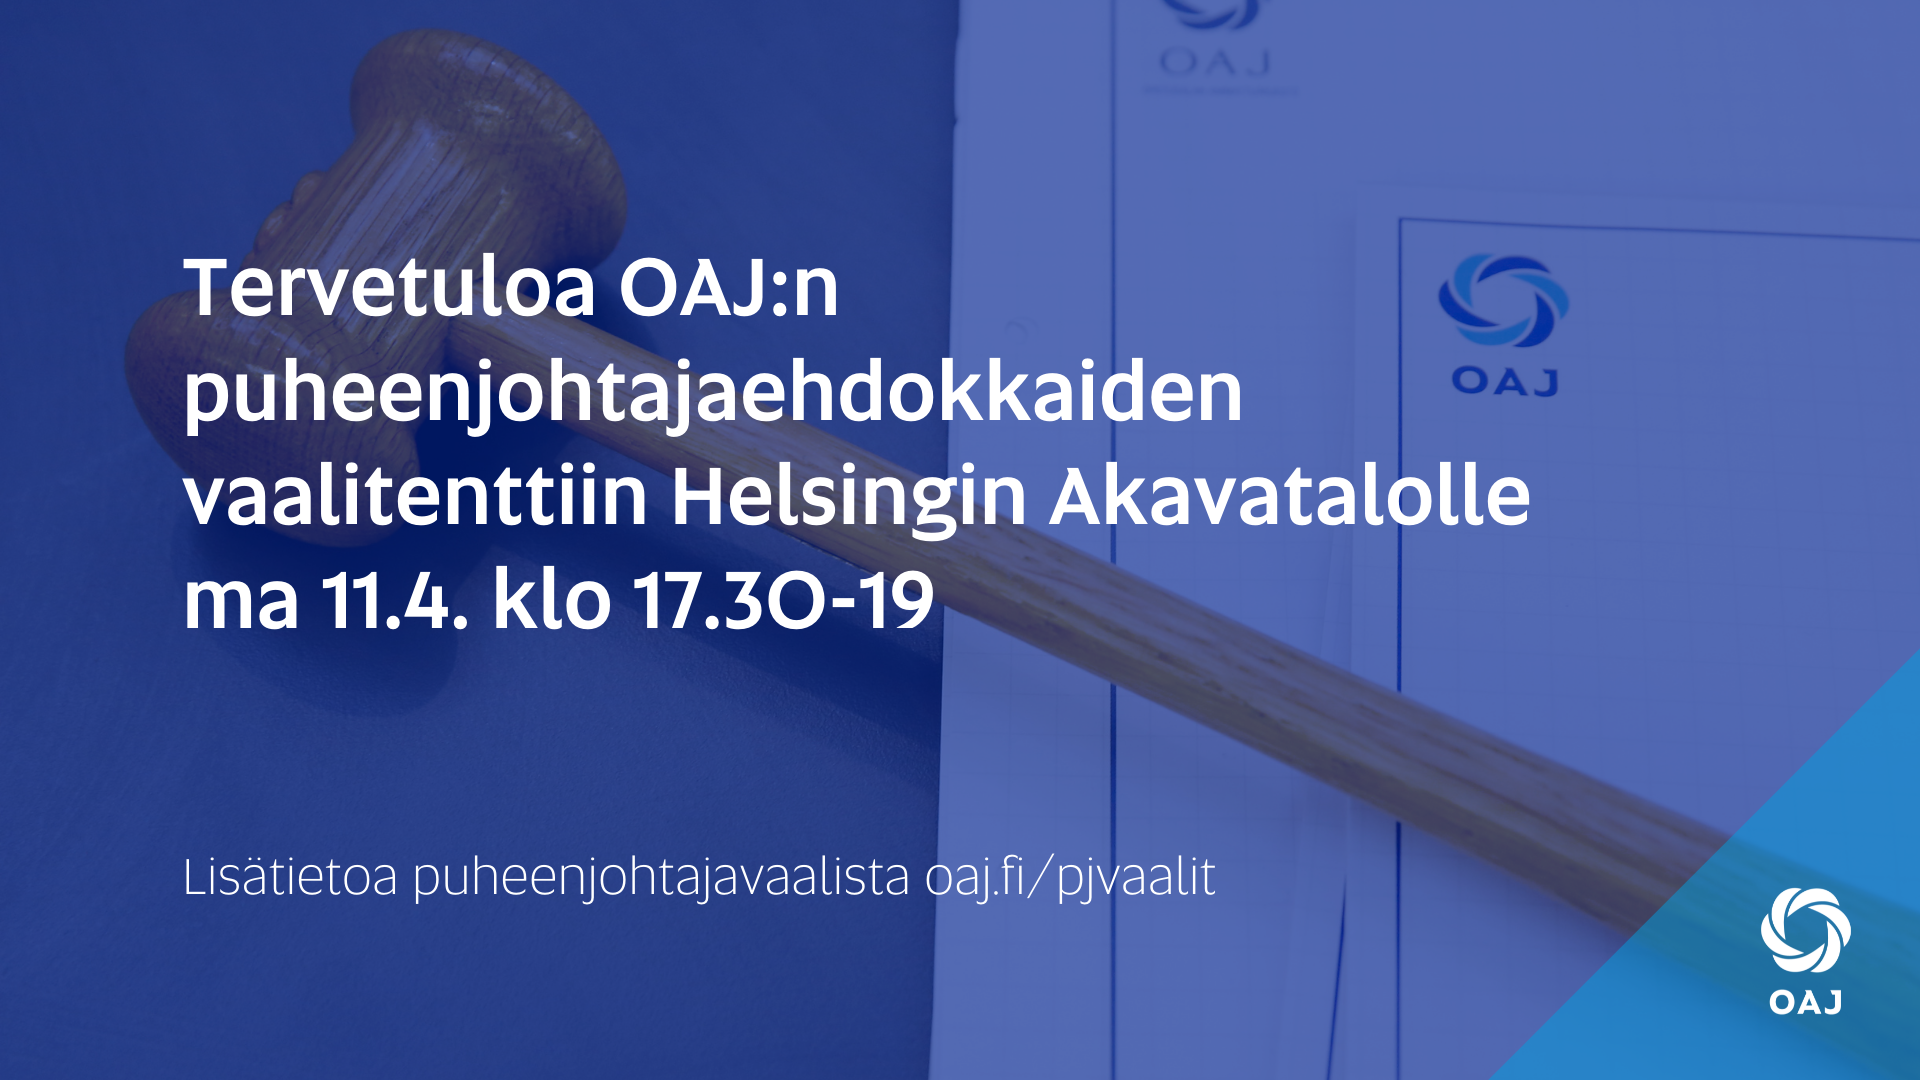 OAJ:n puheenjohtajaehdokkaiden vaalitentti Helsingissä